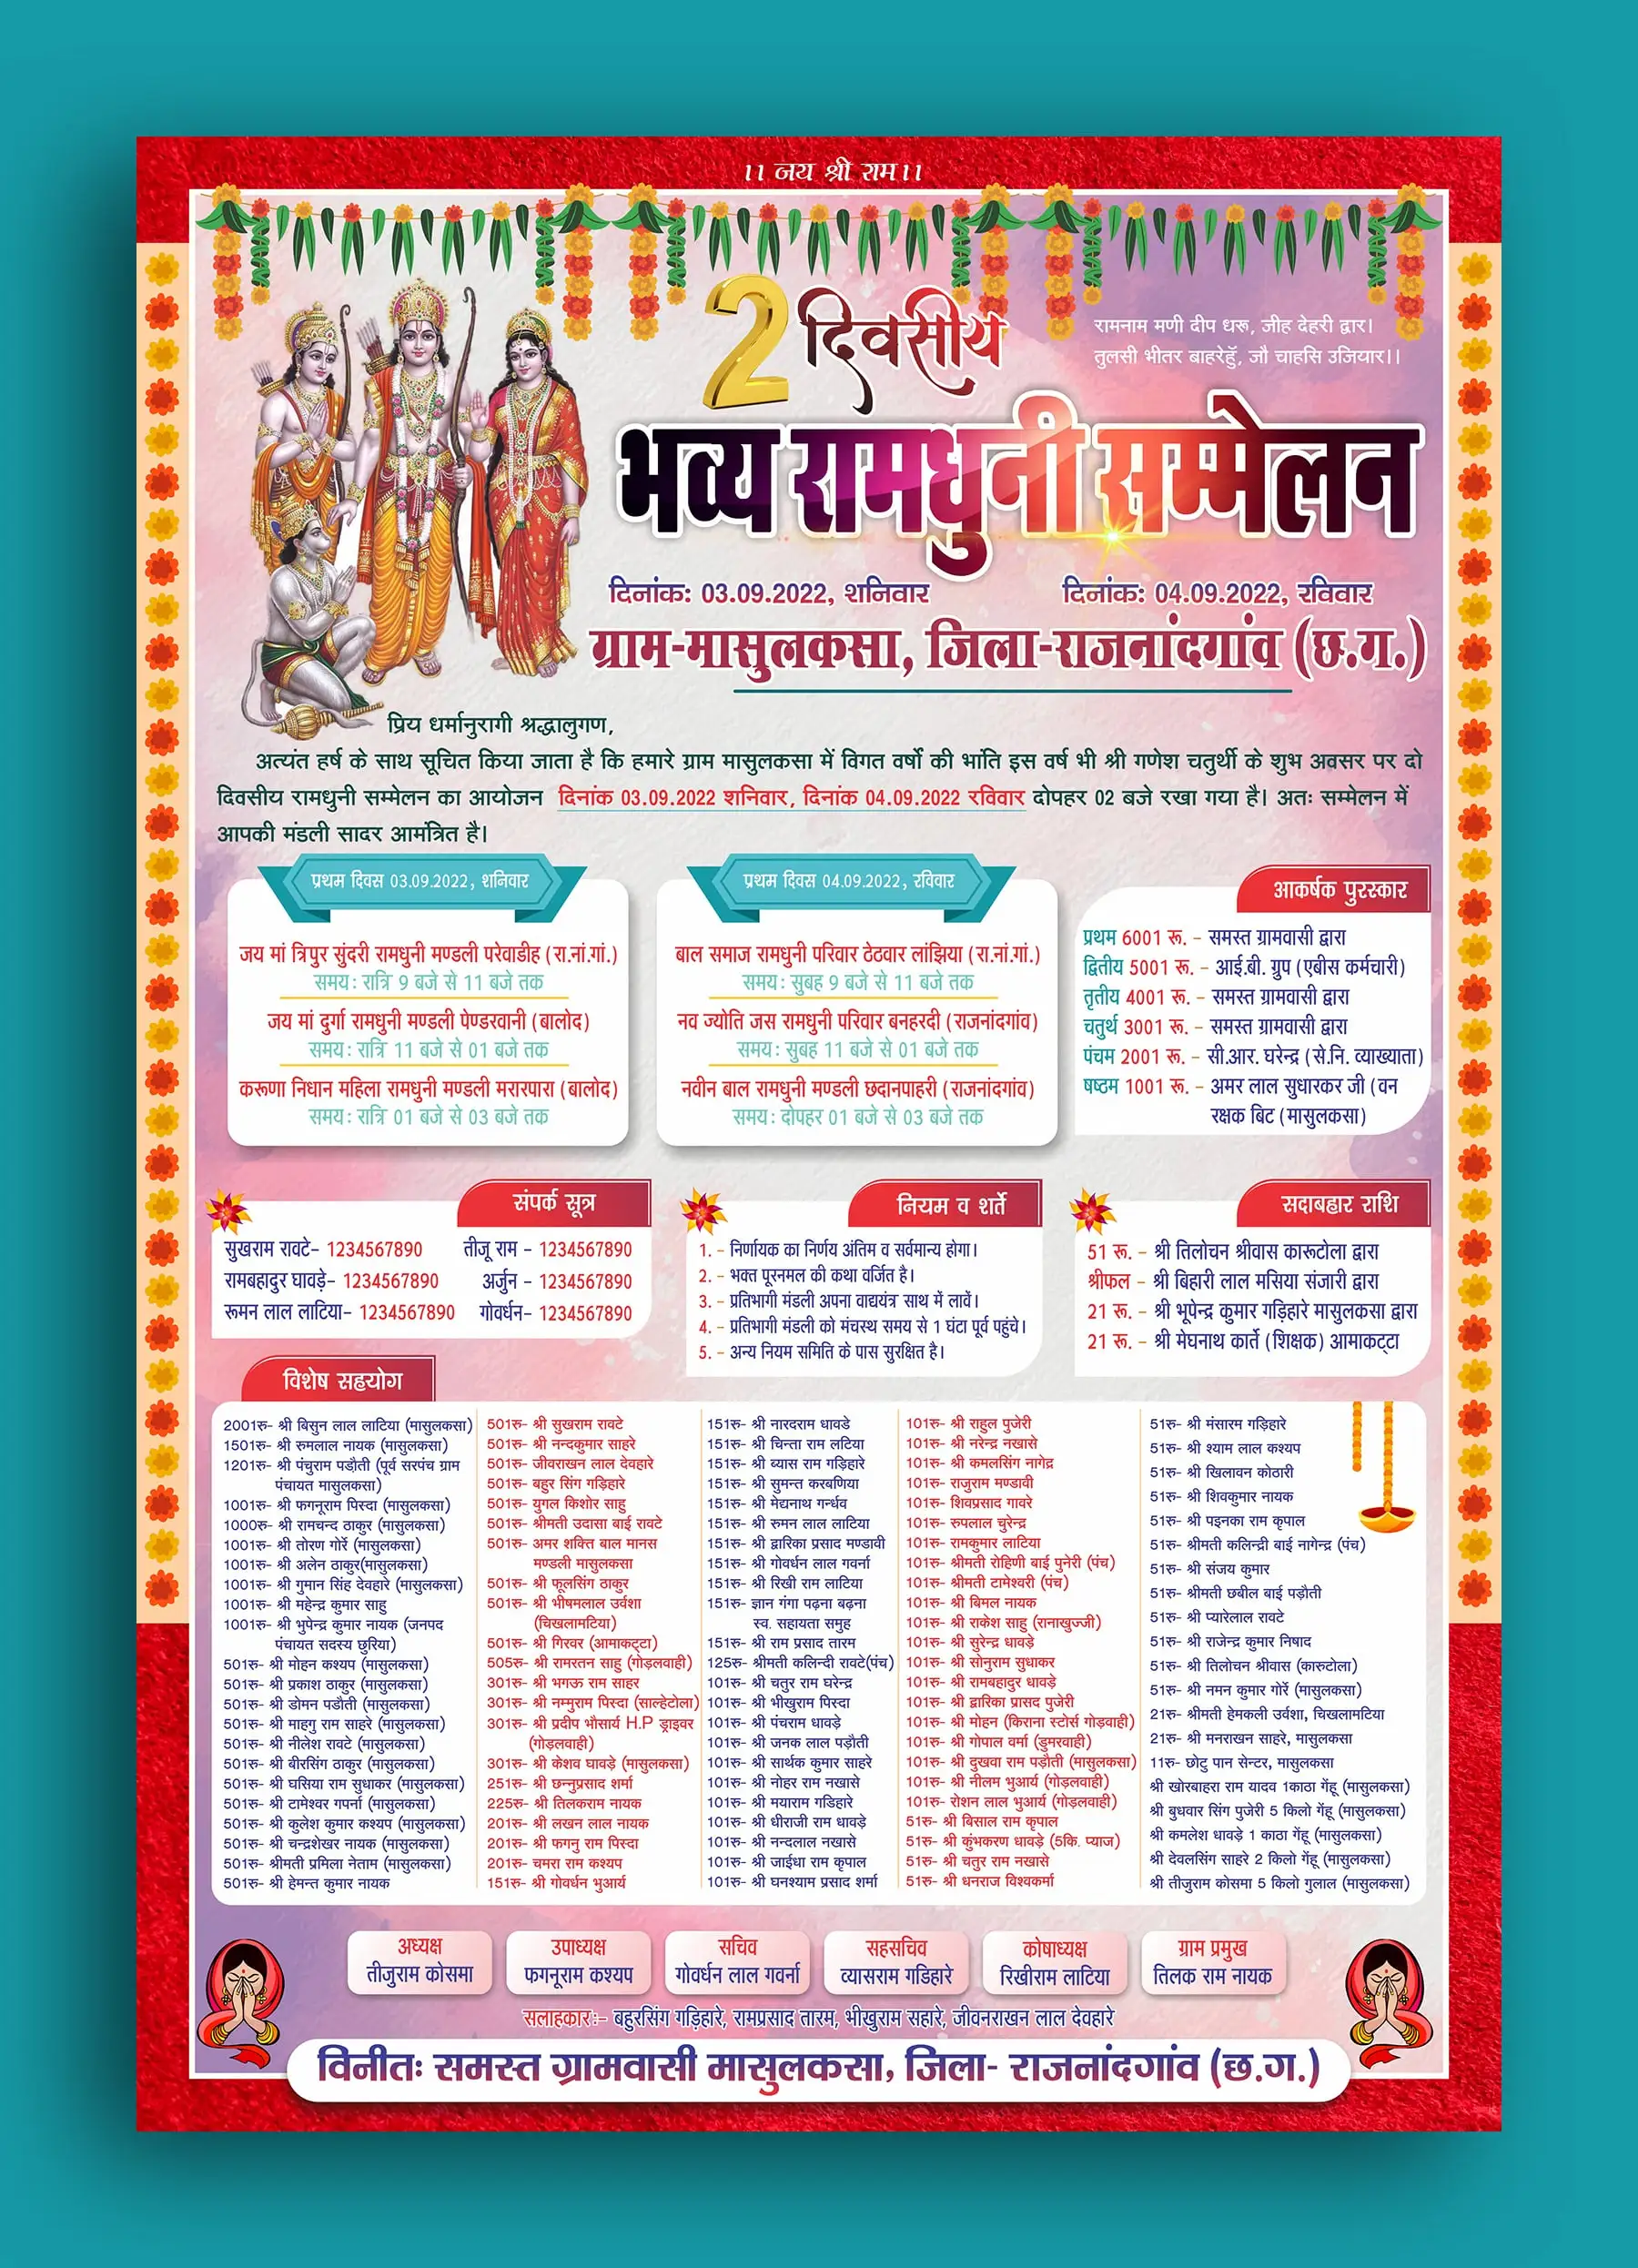 Ramayan-pratiyogita-poster-cdr-file-download-300822